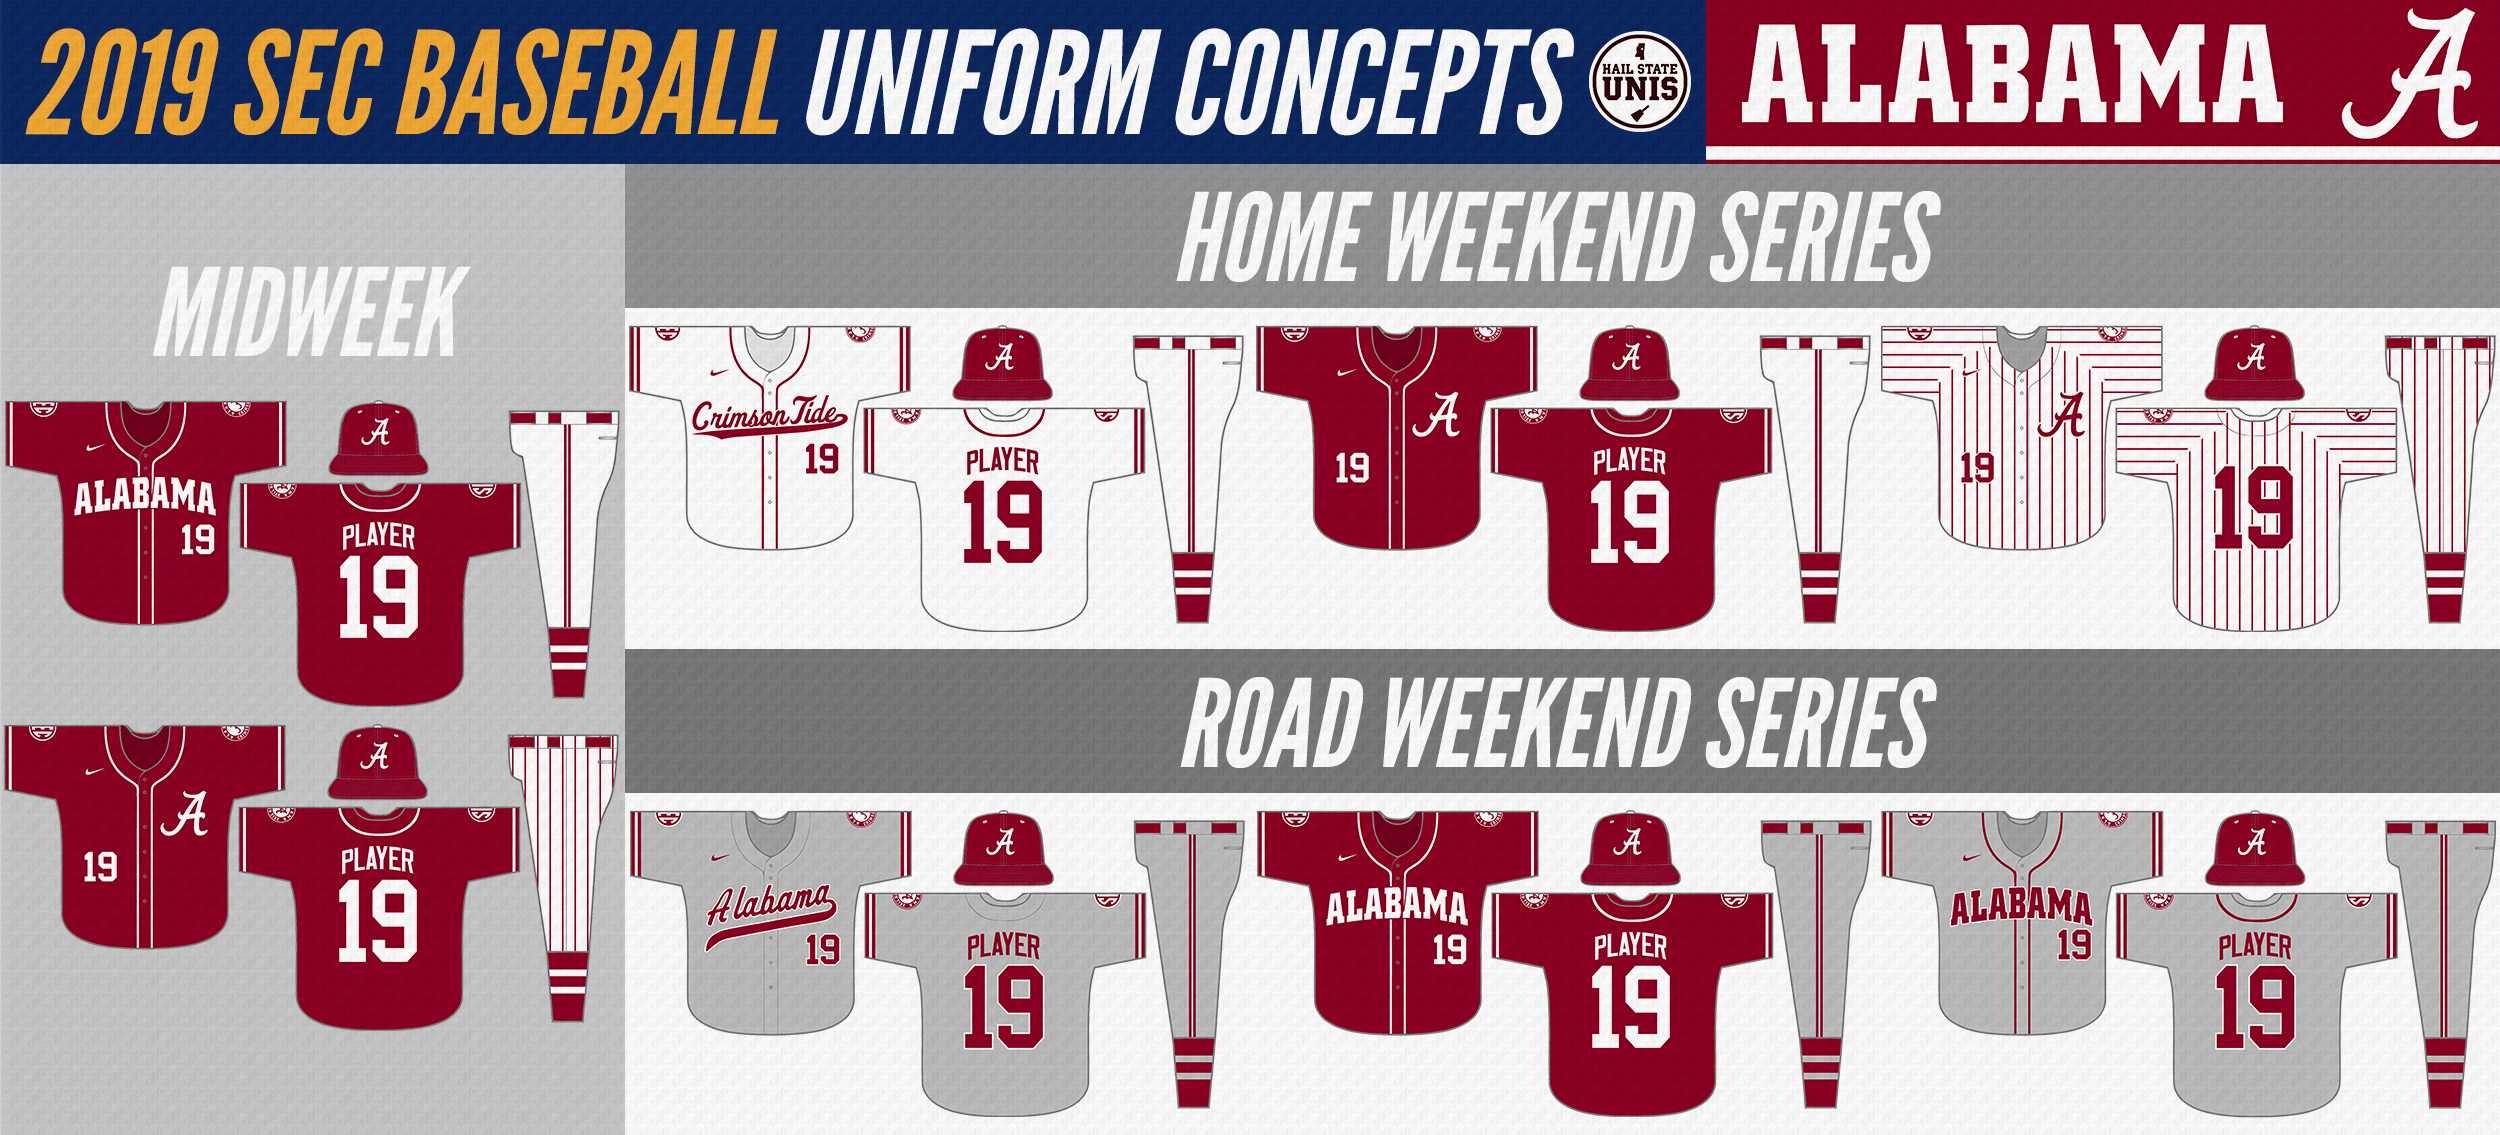 White Sox Uniform Concept Updates